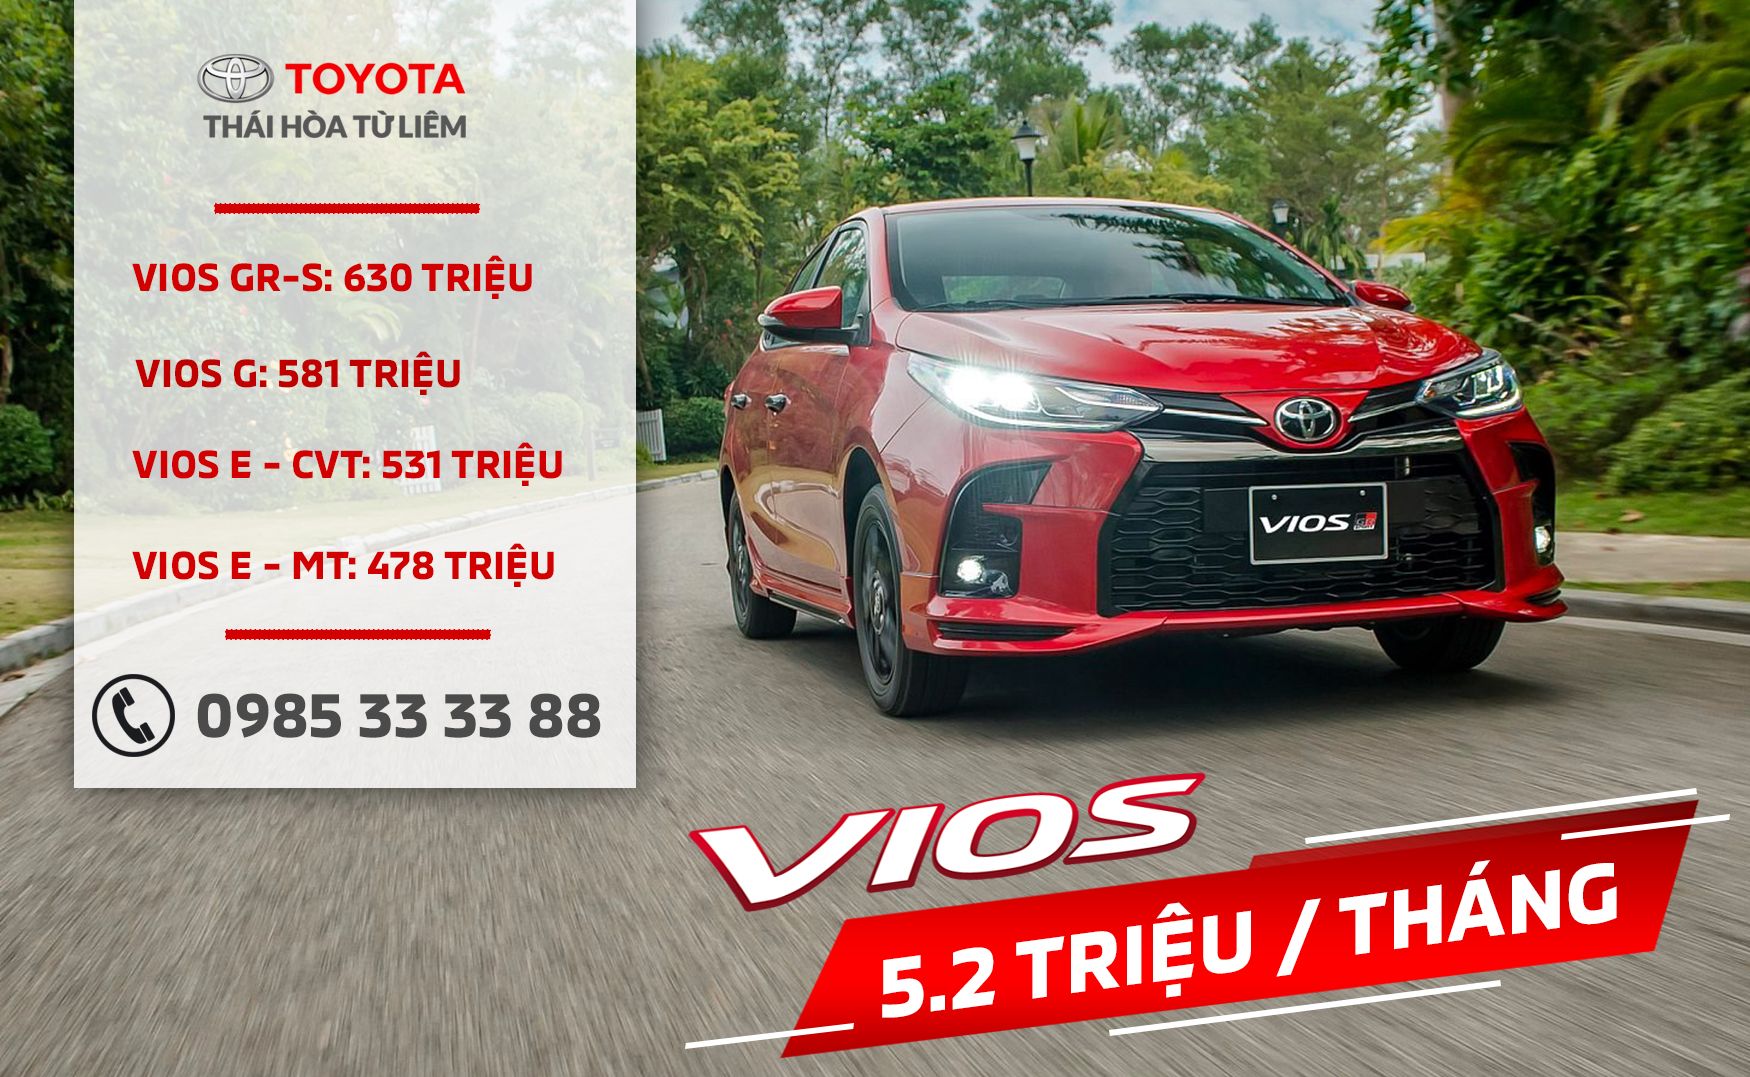 Toyota Vios 15E MT 2021 Giá xe lăn bánh tại Hải Phòng kèm ưu đãi mới